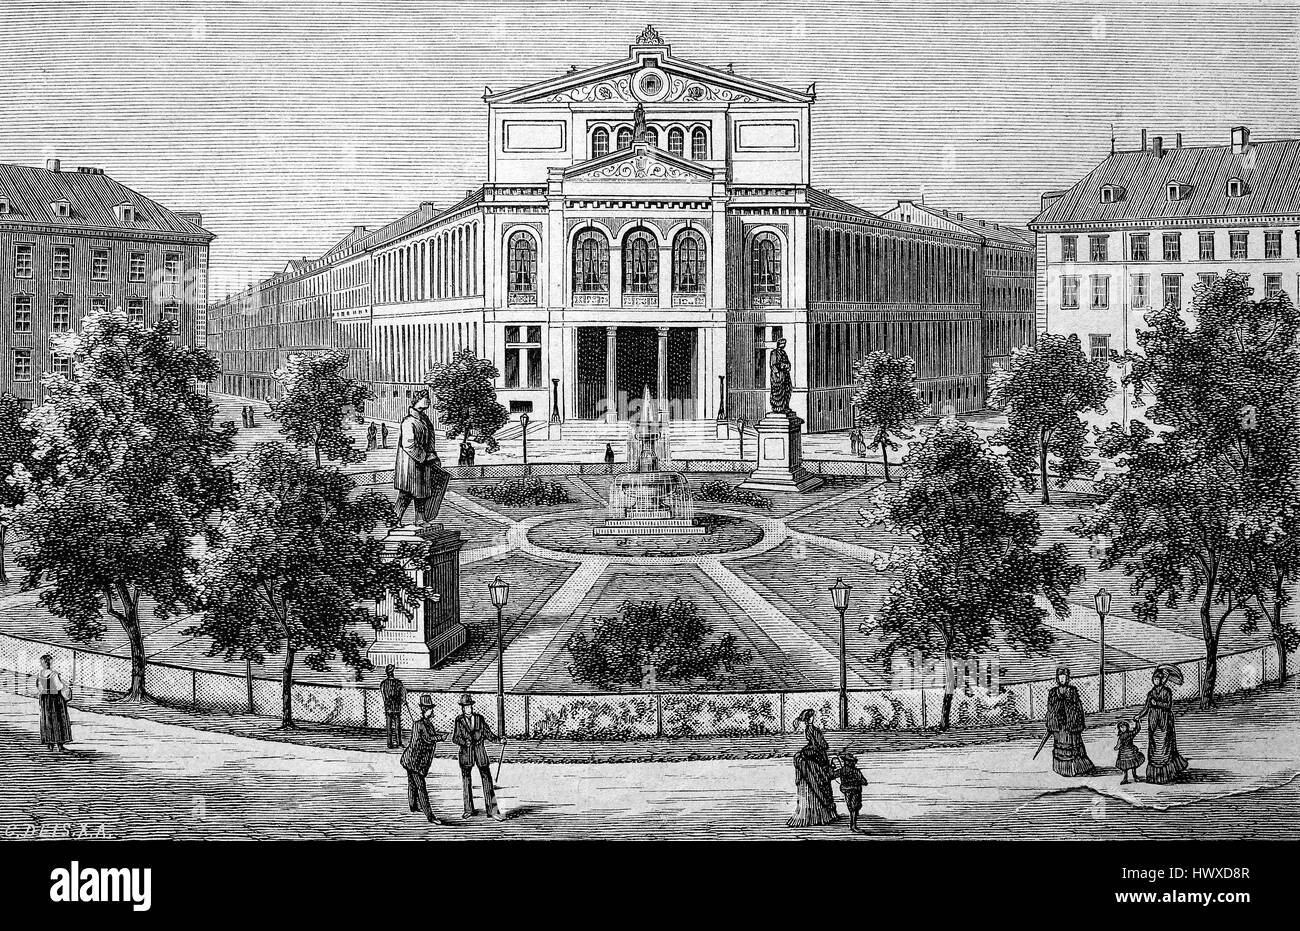 Muenchner Volkstheater è un teatro di Monaco di Baviera, Germania, riproduzione di una immagine, la xilografia a partire dall'anno 1881, digitale migliorata Foto Stock